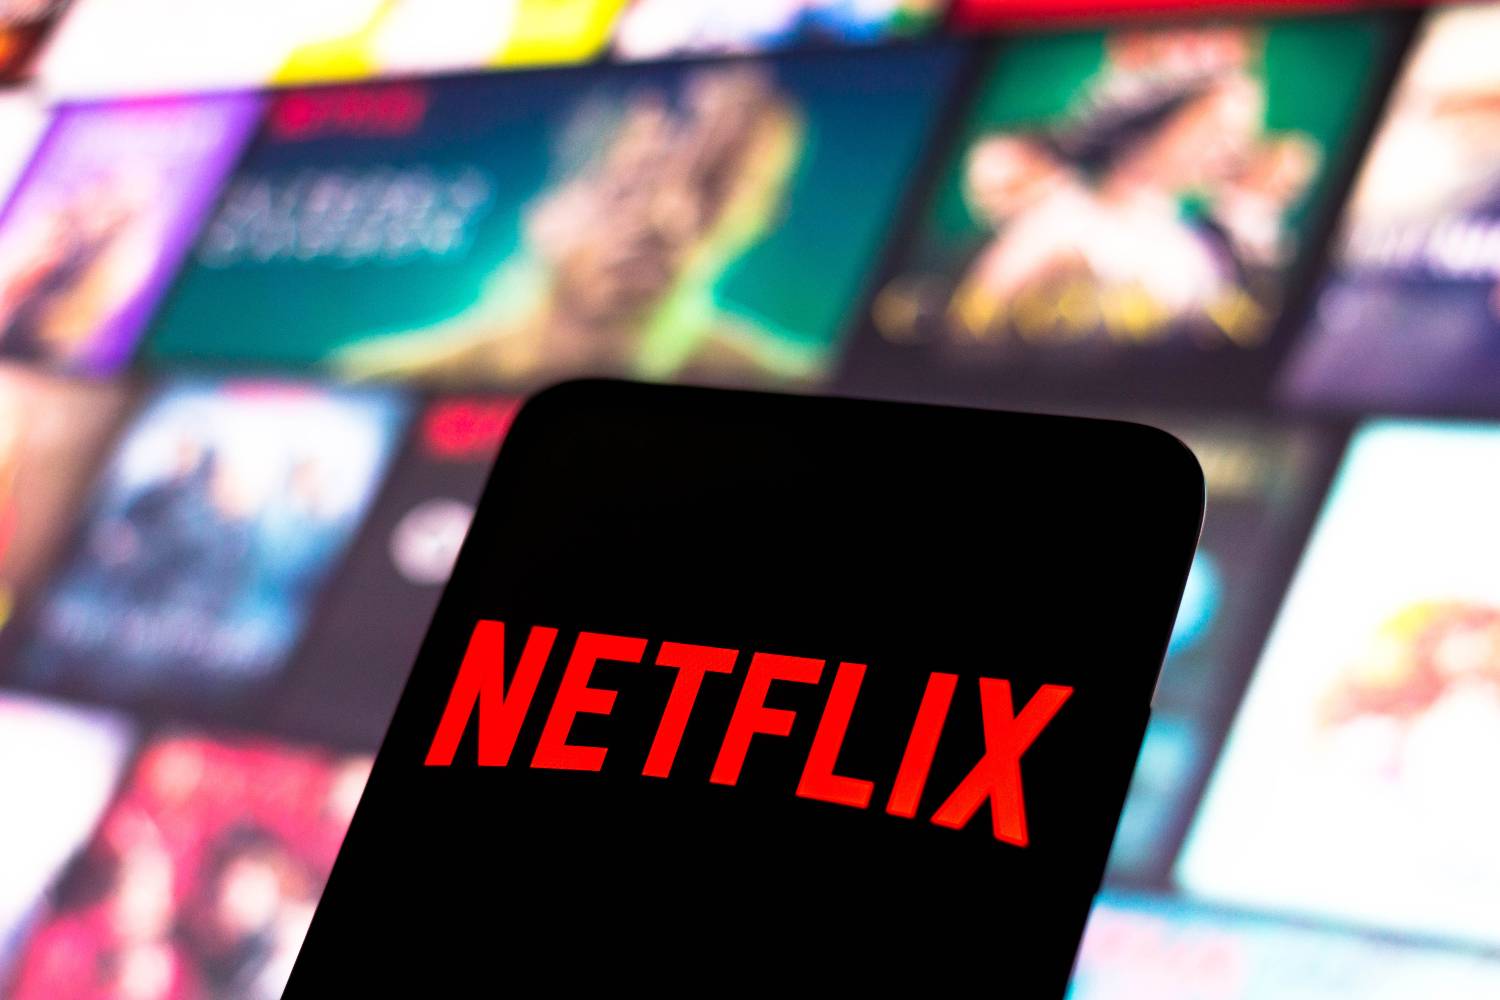 Netflix anuncia cobrança extra por compartilhamento de senhas no Brasil -  Belém.com.br